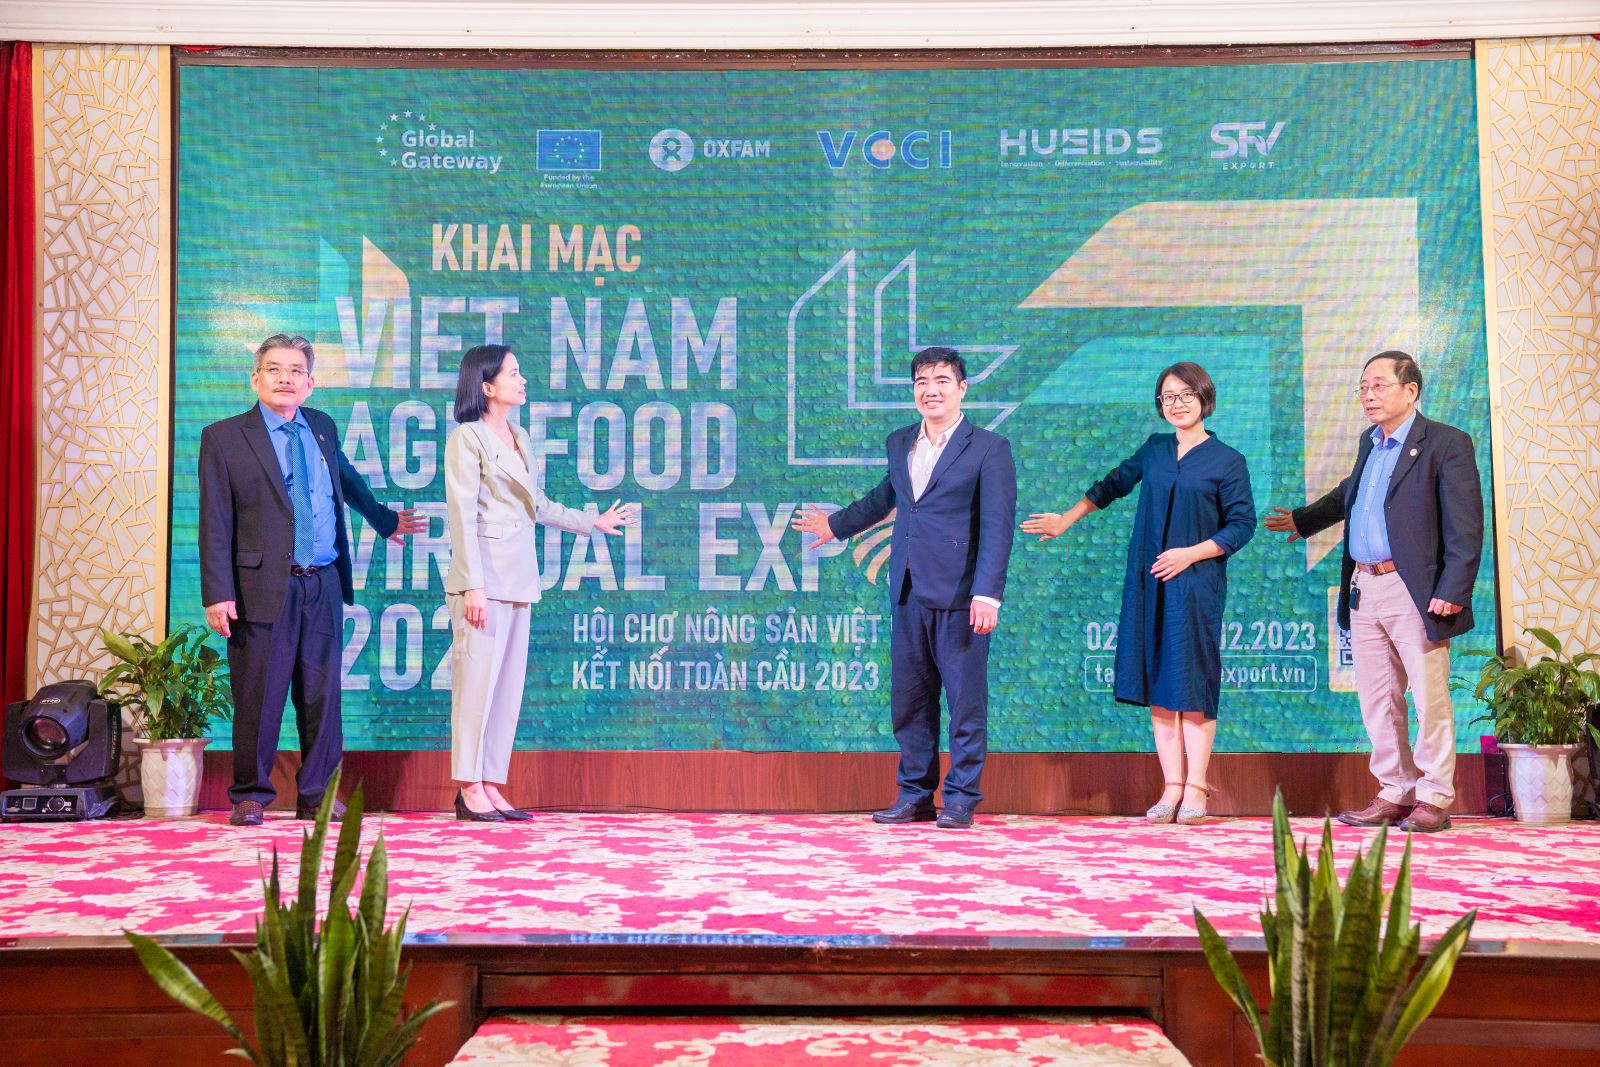 Hội Chợ Nông sản Việt Nam 2023 thu hút hơn 80 gian hàng của các doanh nghiệp nông sản đến từ 33 tỉnh/thành phố trên toàn quốc, với hơn 400 loại sản phẩm.